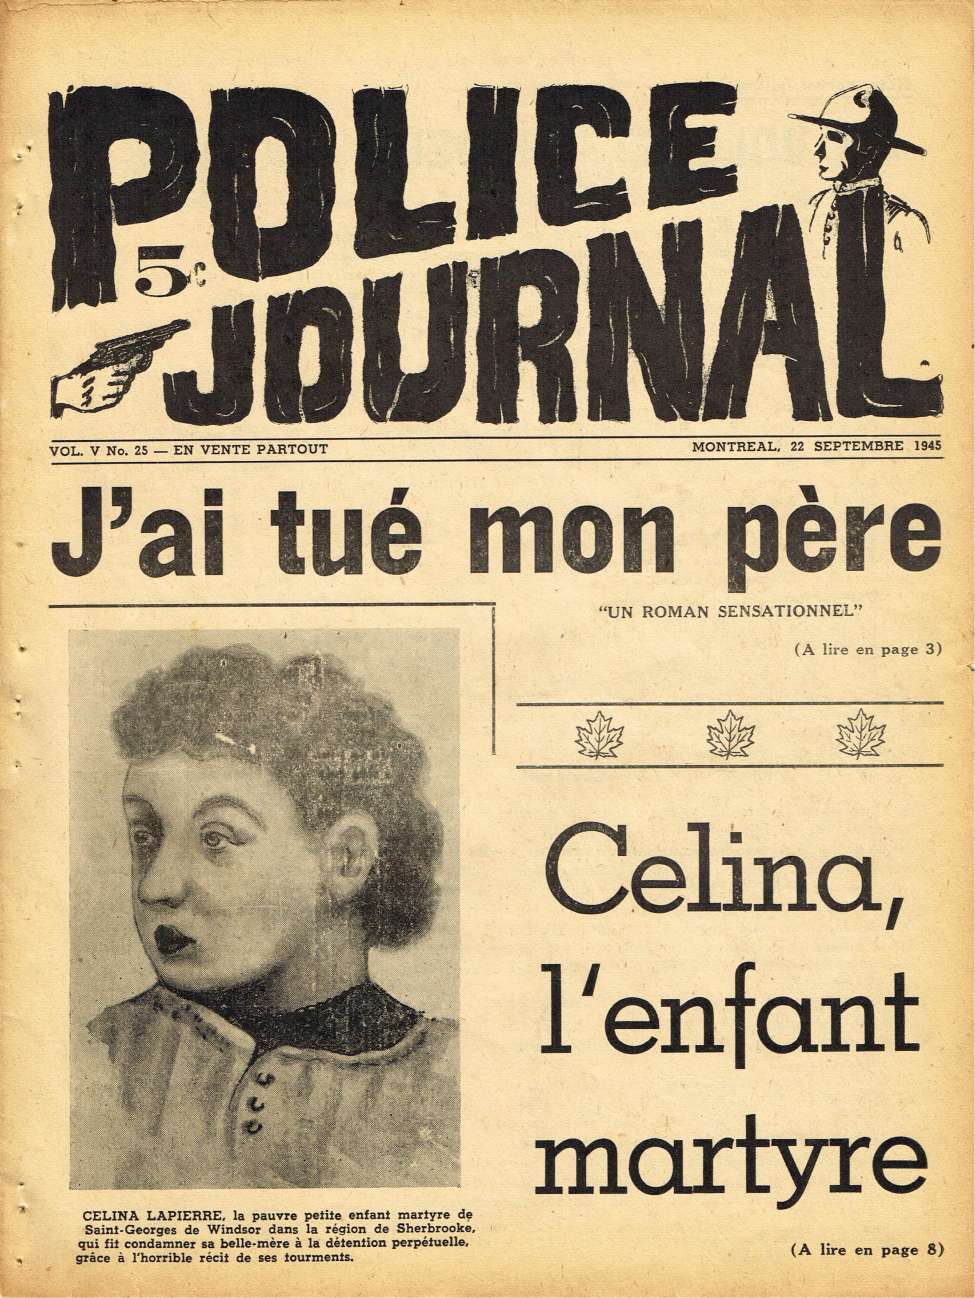 Book Cover For Police Journal v5 25 - Celina, I'enfant martyre